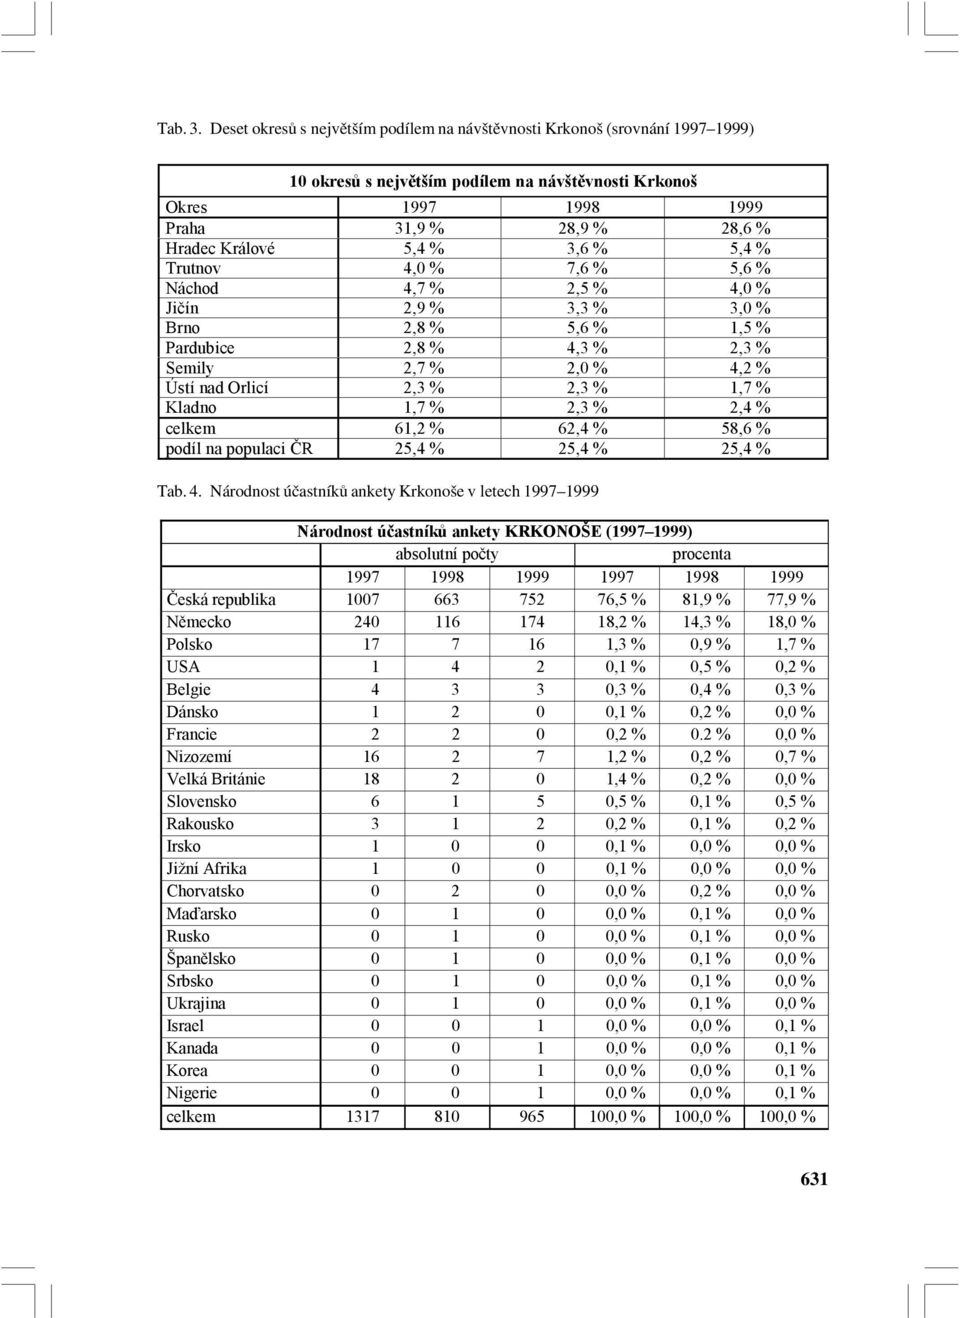 Trutnov 4, % 7,6 % 5,6 % Náchod 4,7 % 2,5 % 4, % Jičín 2,9 % 3,3 % 3, % Brno 2,8 % 5,6 % 1,5 % Pardubice 2,8 % 4,3 % 2,3 % Semily 2,7 % 2, % 4,2 % Ústí nad Orlicí 2,3 % 2,3 % 1,7 % Kladno 1,7 % 2,3 %